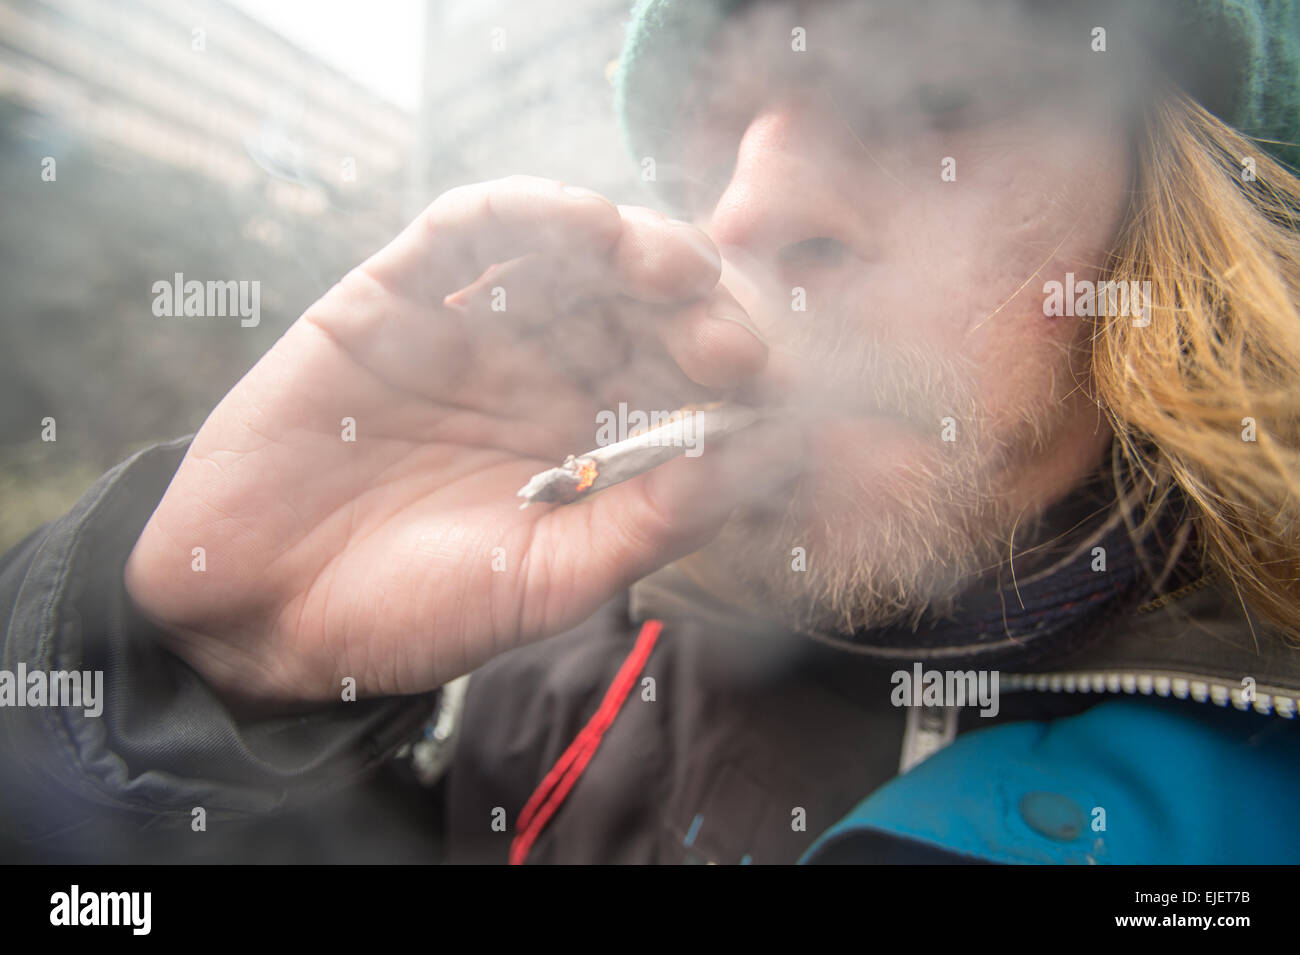 Un homme fumant une articulation en utilisant l'épice, un haut légal Banque D'Images